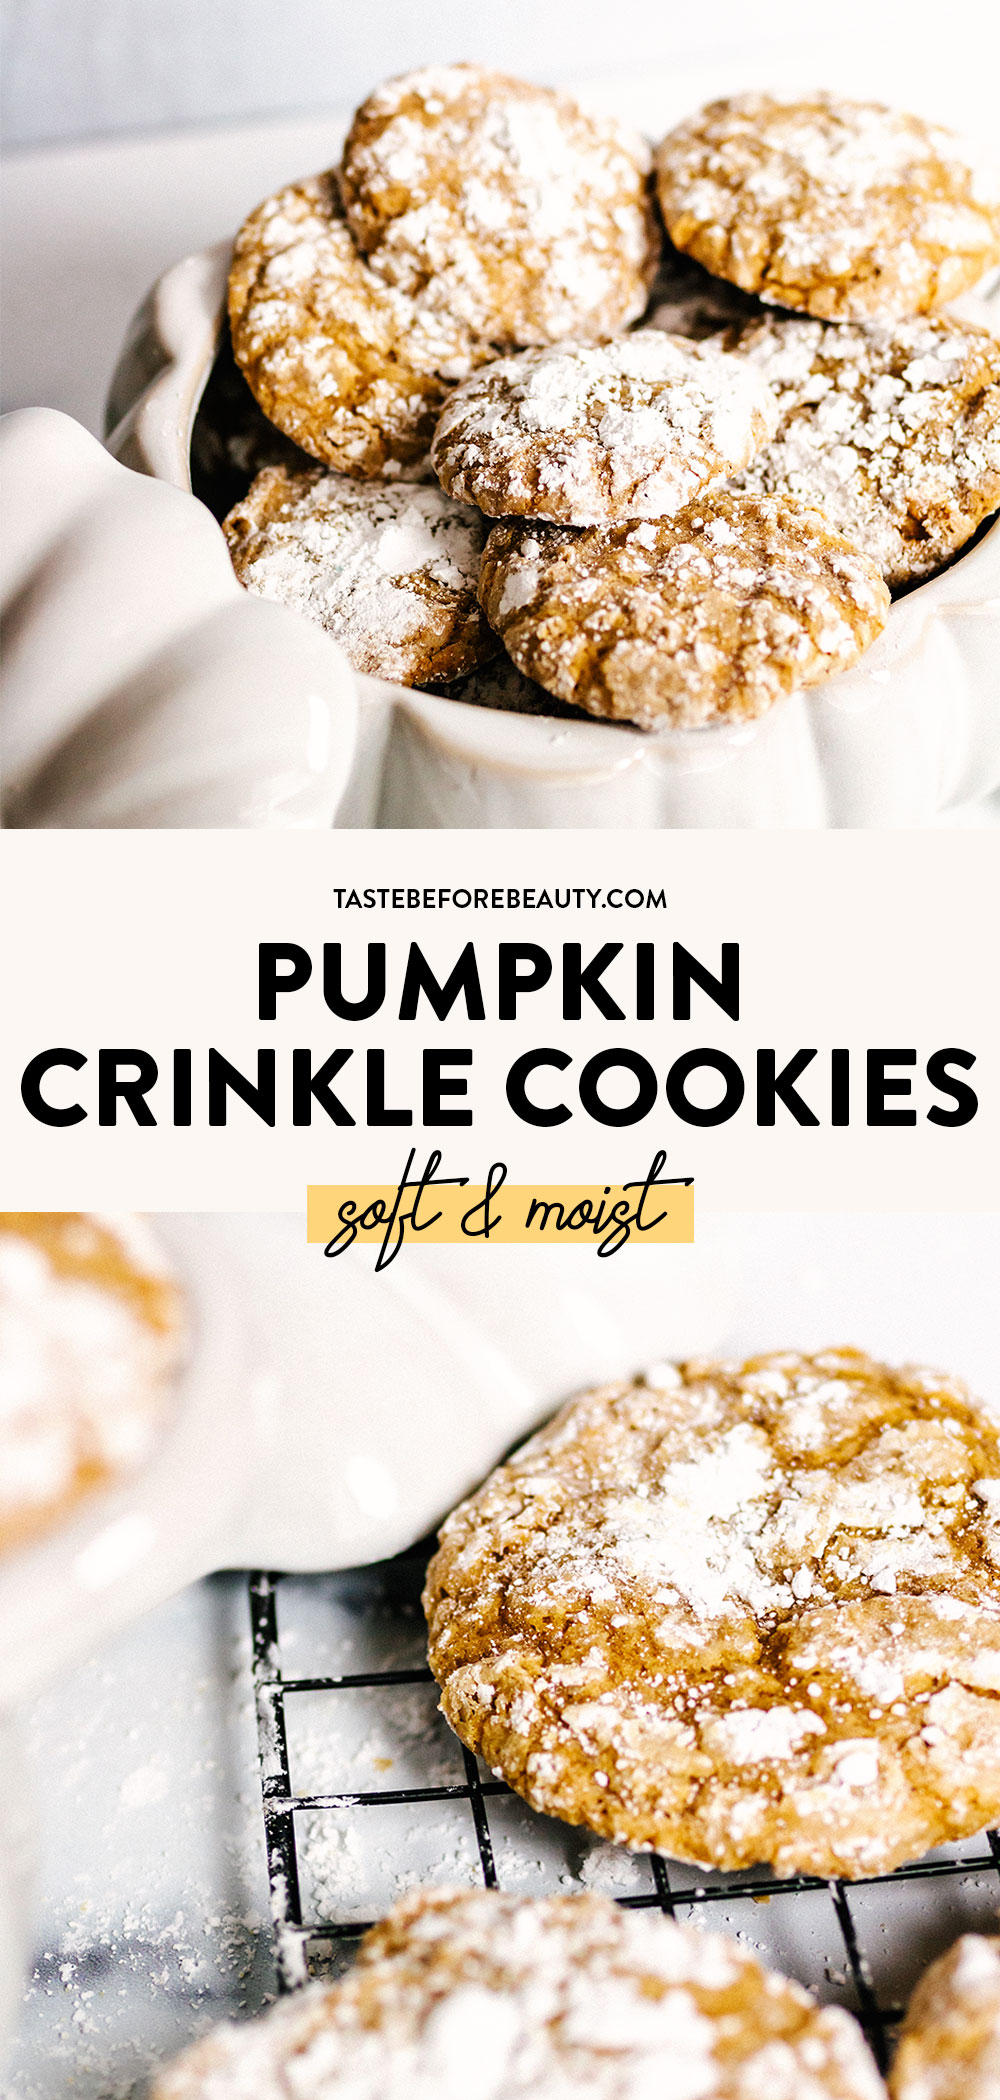 pumpkin crinkle cookies pinterest pin